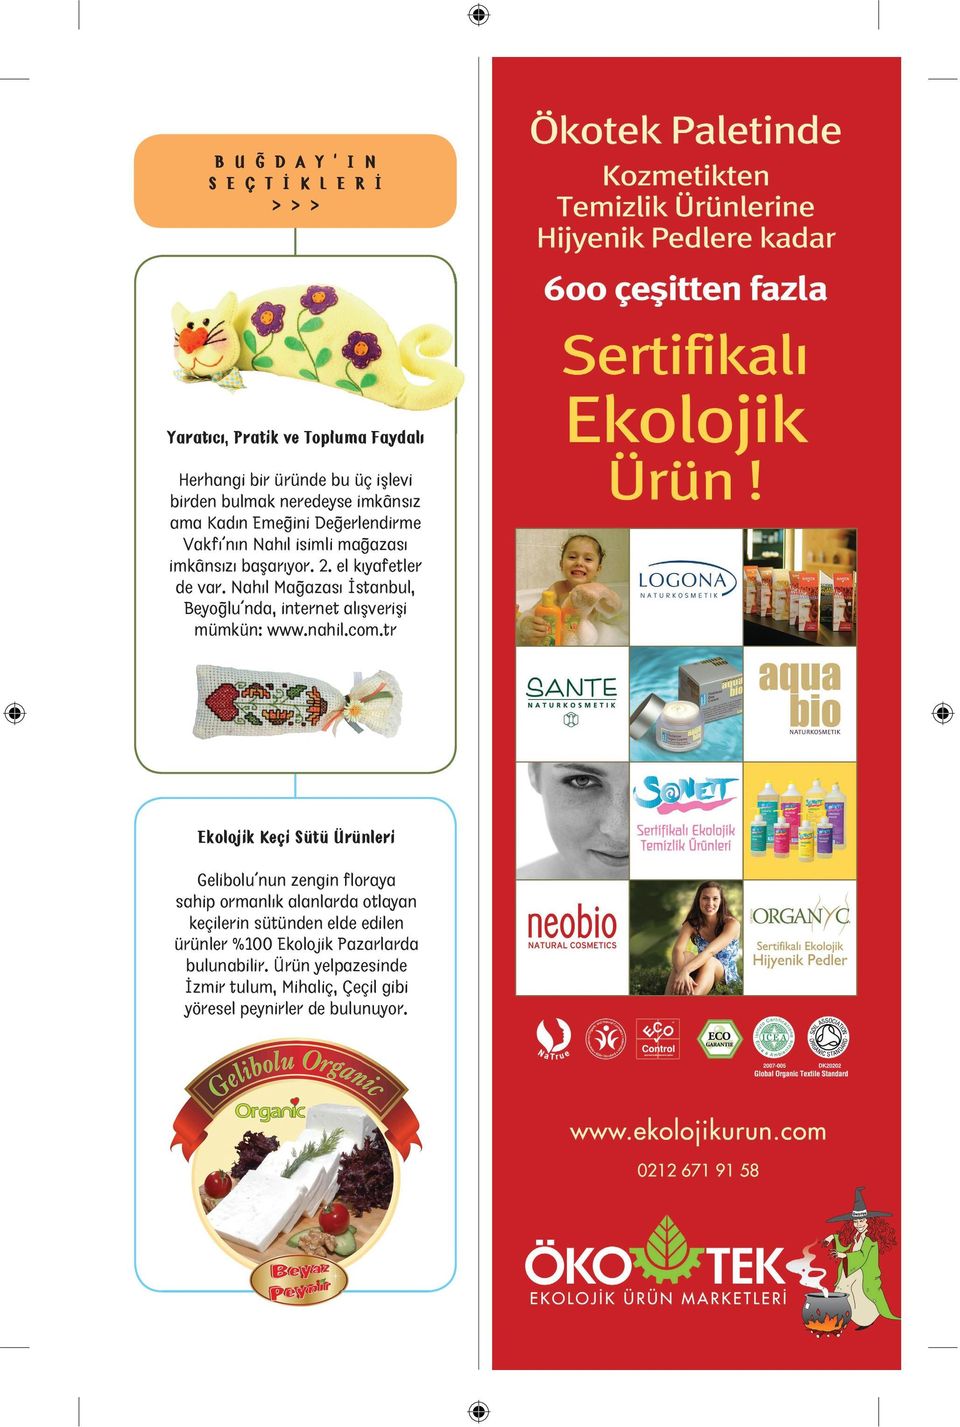 Nahıl Mağazası İstanbul, Beyoğlu nda, internet alışverişi mümkün: www.nahil.com.